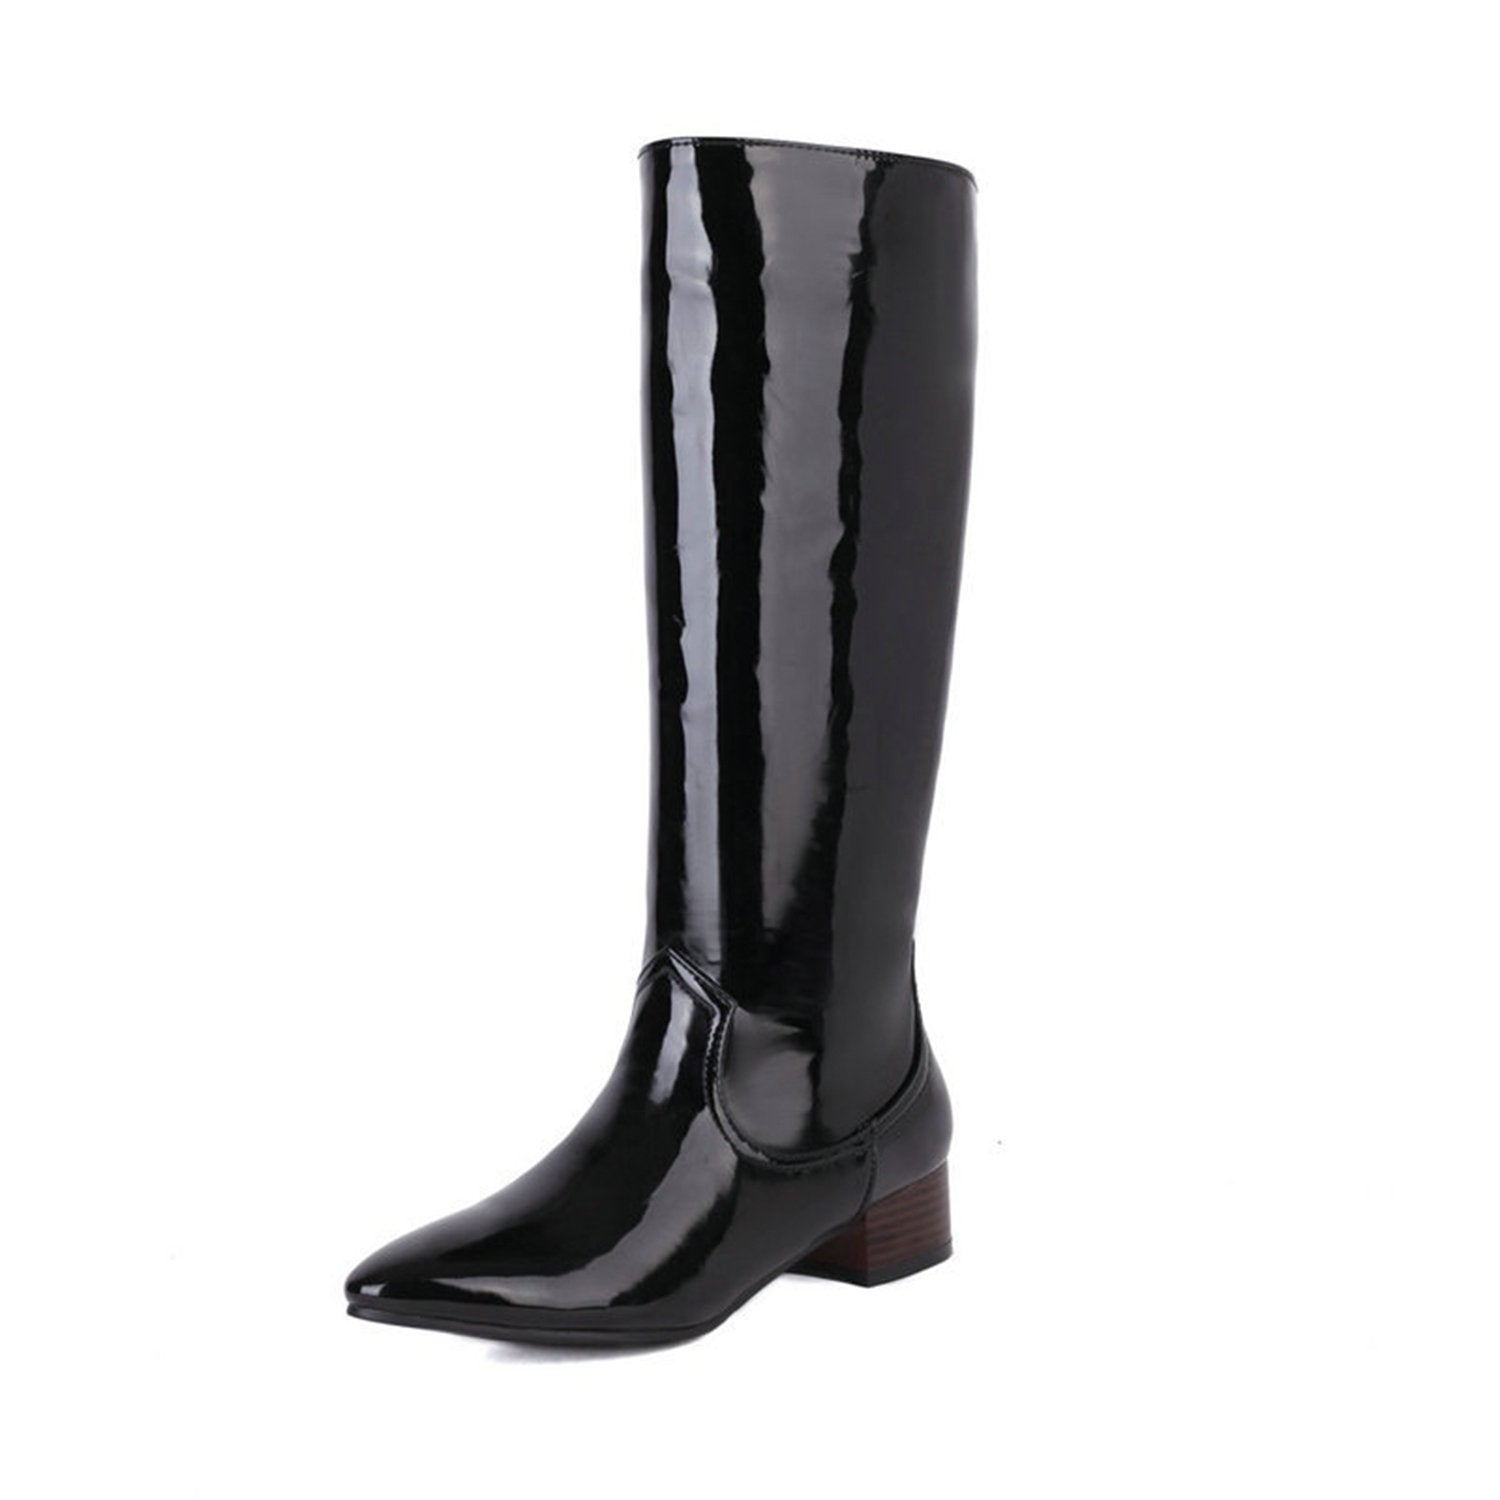 Black patent leather heeled boots - Ines de la Fressange Paris